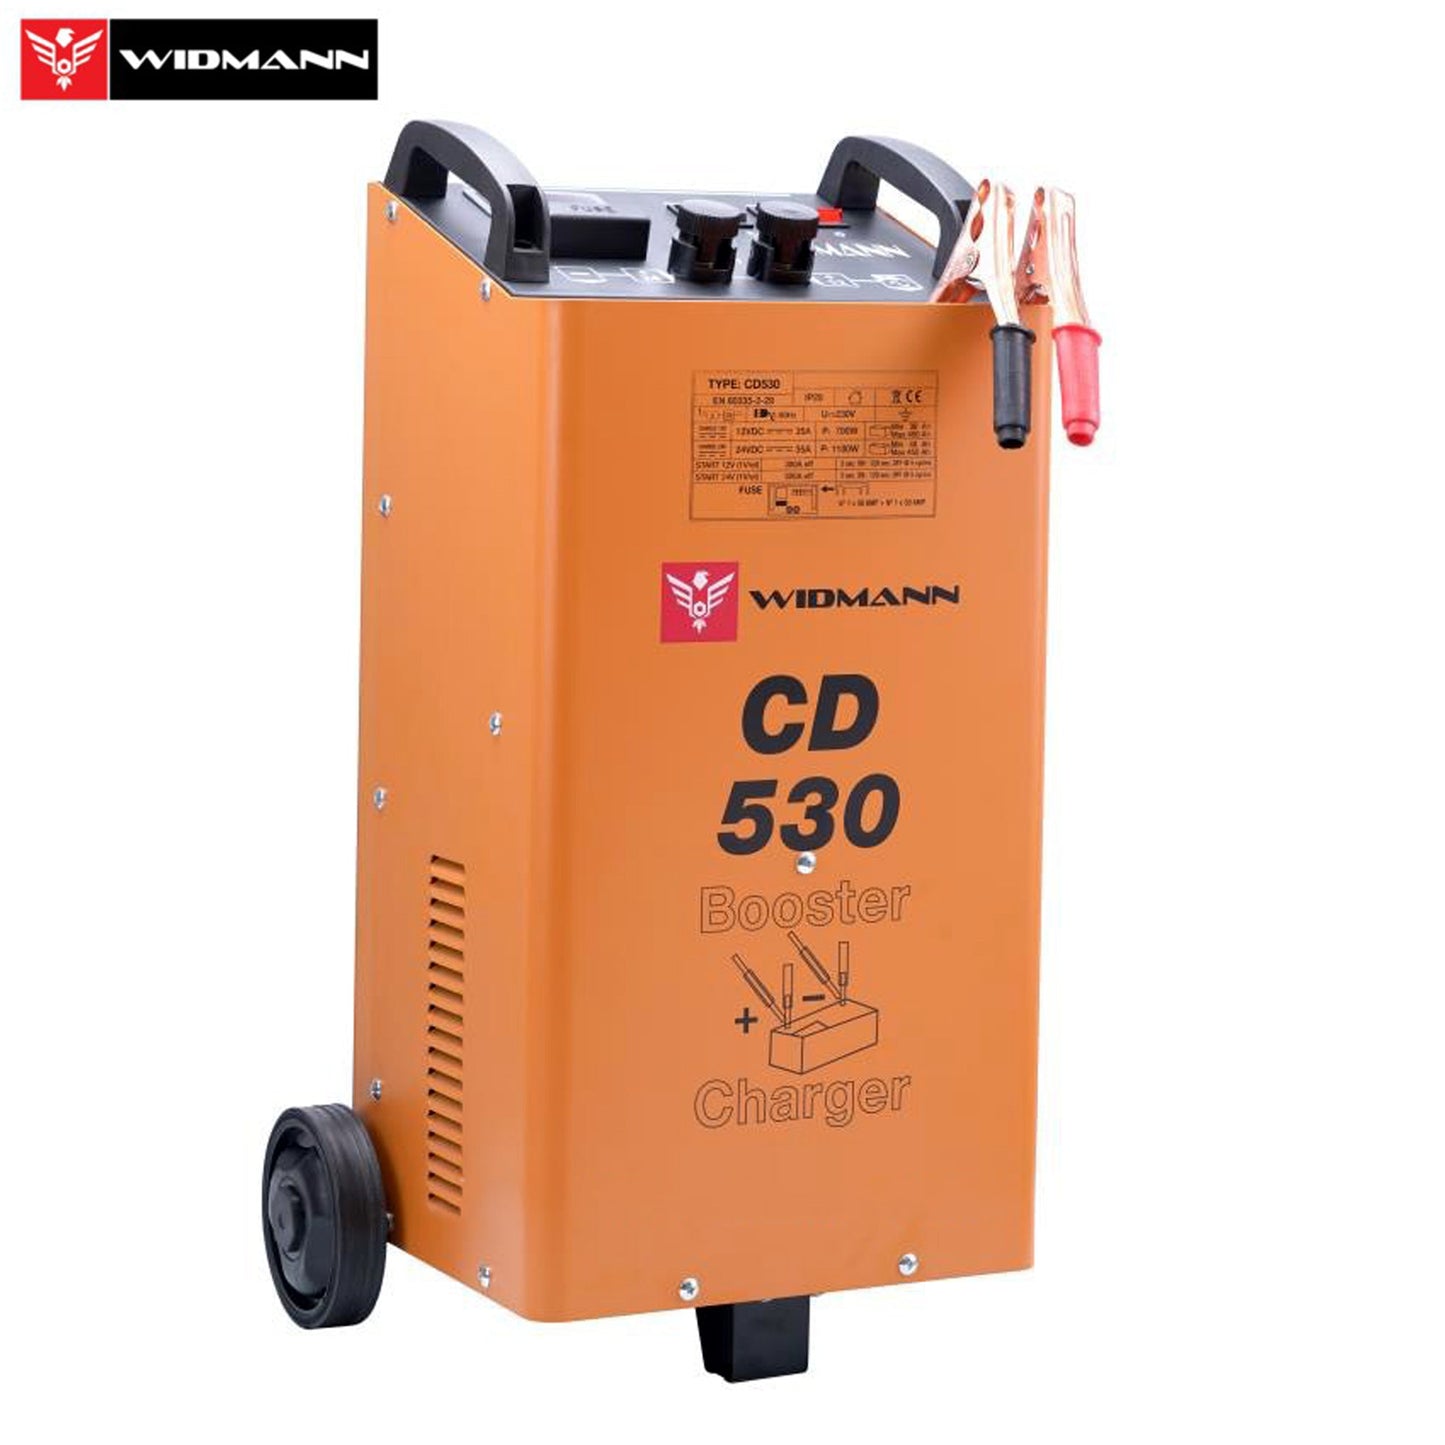 Widmann CD-530: 12V/24V acculader en startbooster - Bivakshop